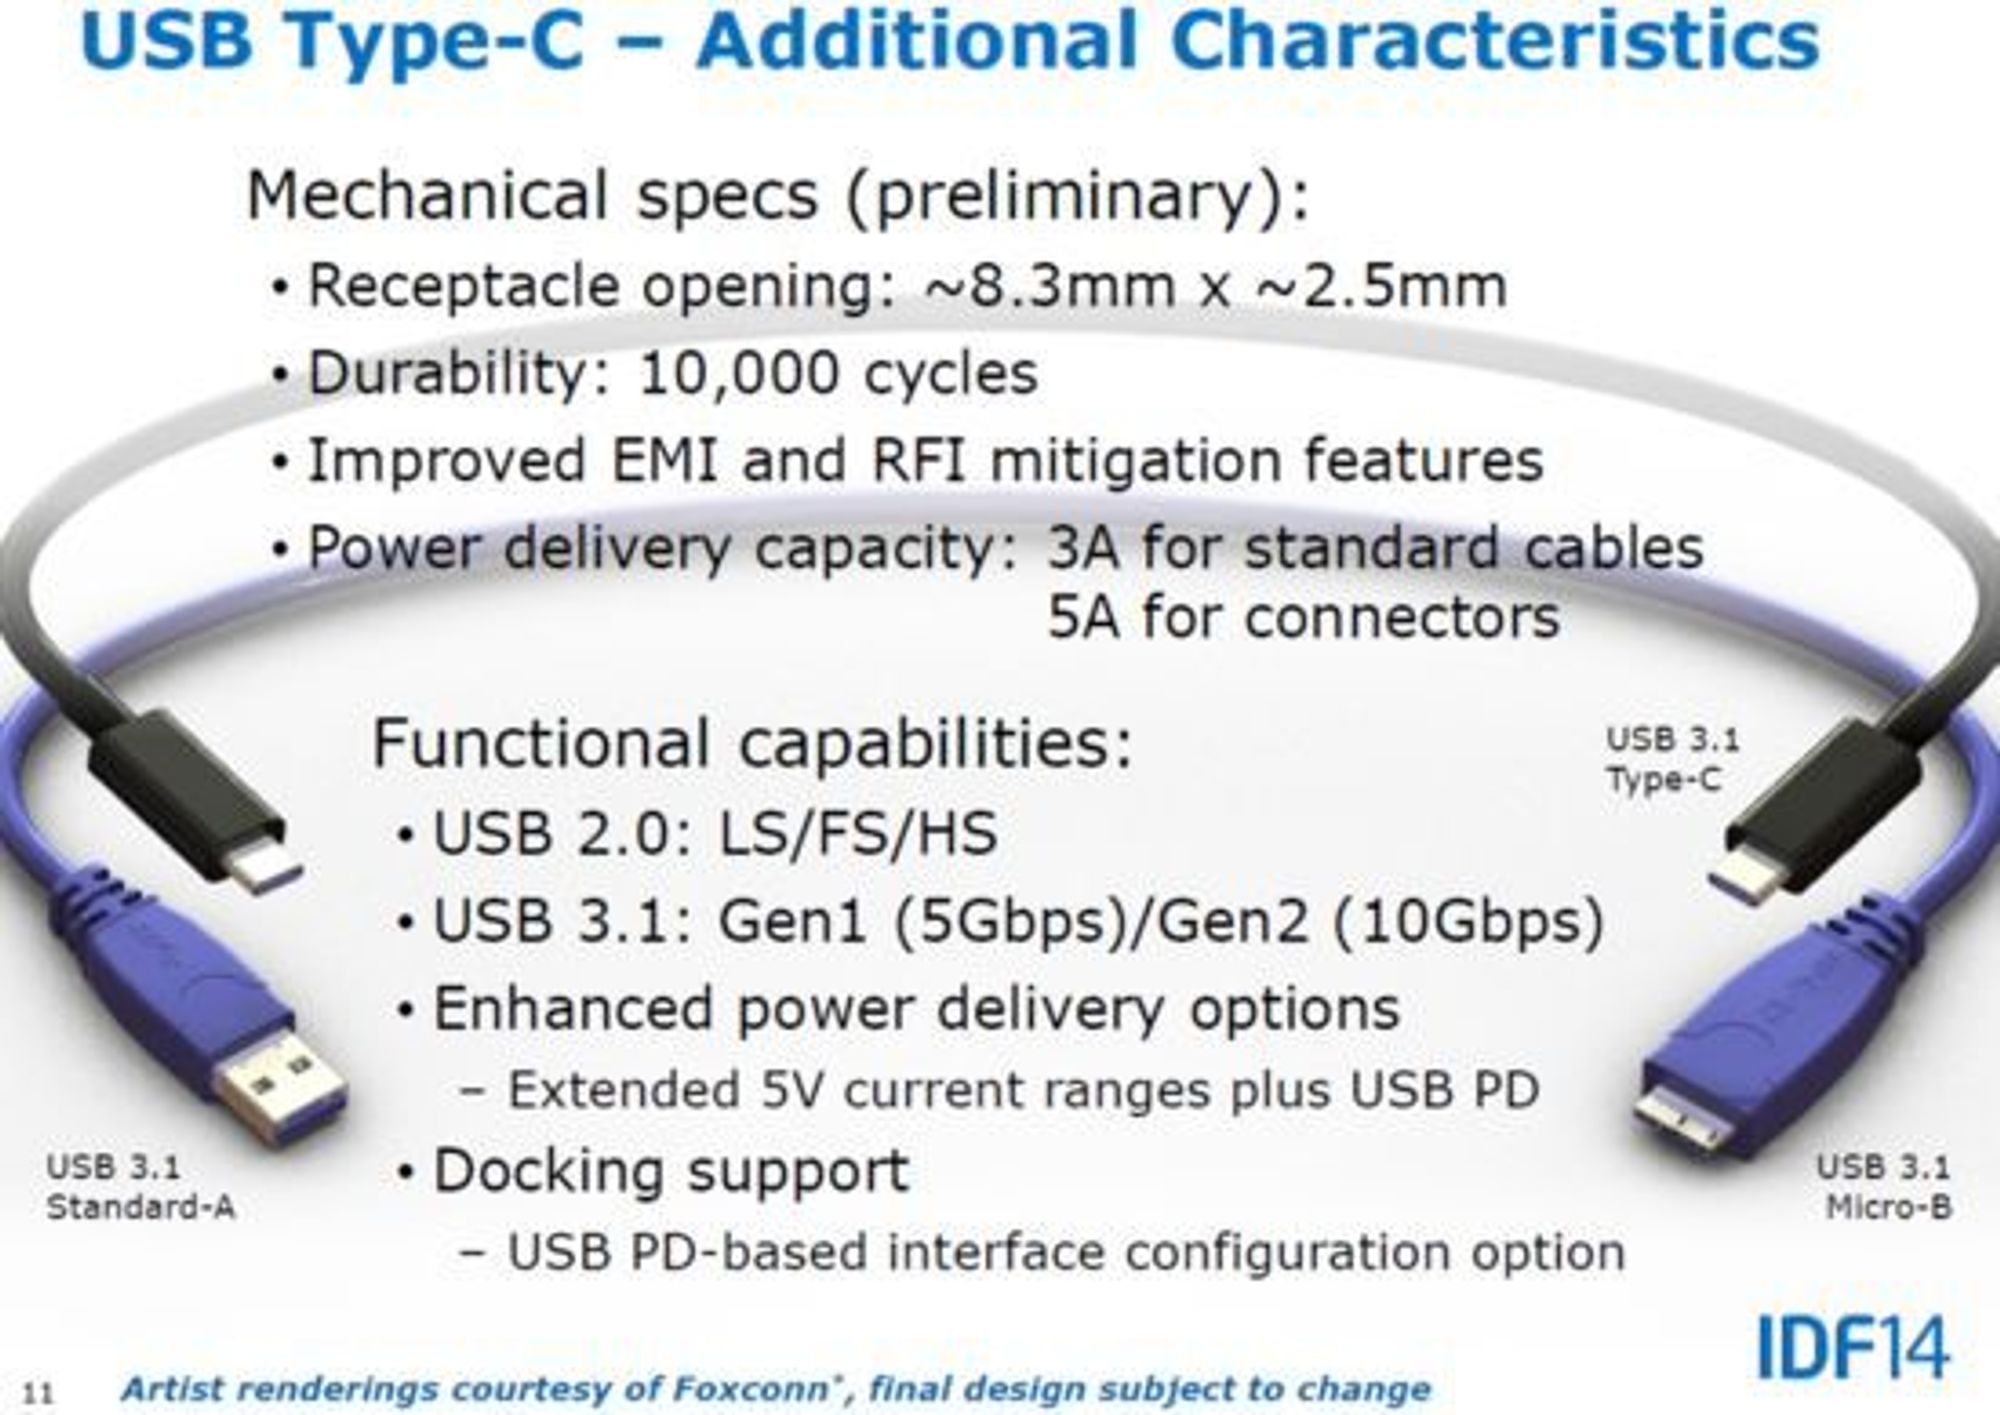 Verdens største elektronikkprodusent, taiwanske Foxconn, gjør det klart at det endelige designet kan bli endret før den nye USB-kabelen etter planen skal være klar for markedet senere i 2014. Spesifikasjonene skal være spikret innen juli, ifølge USB 3.0 Promoter Group.